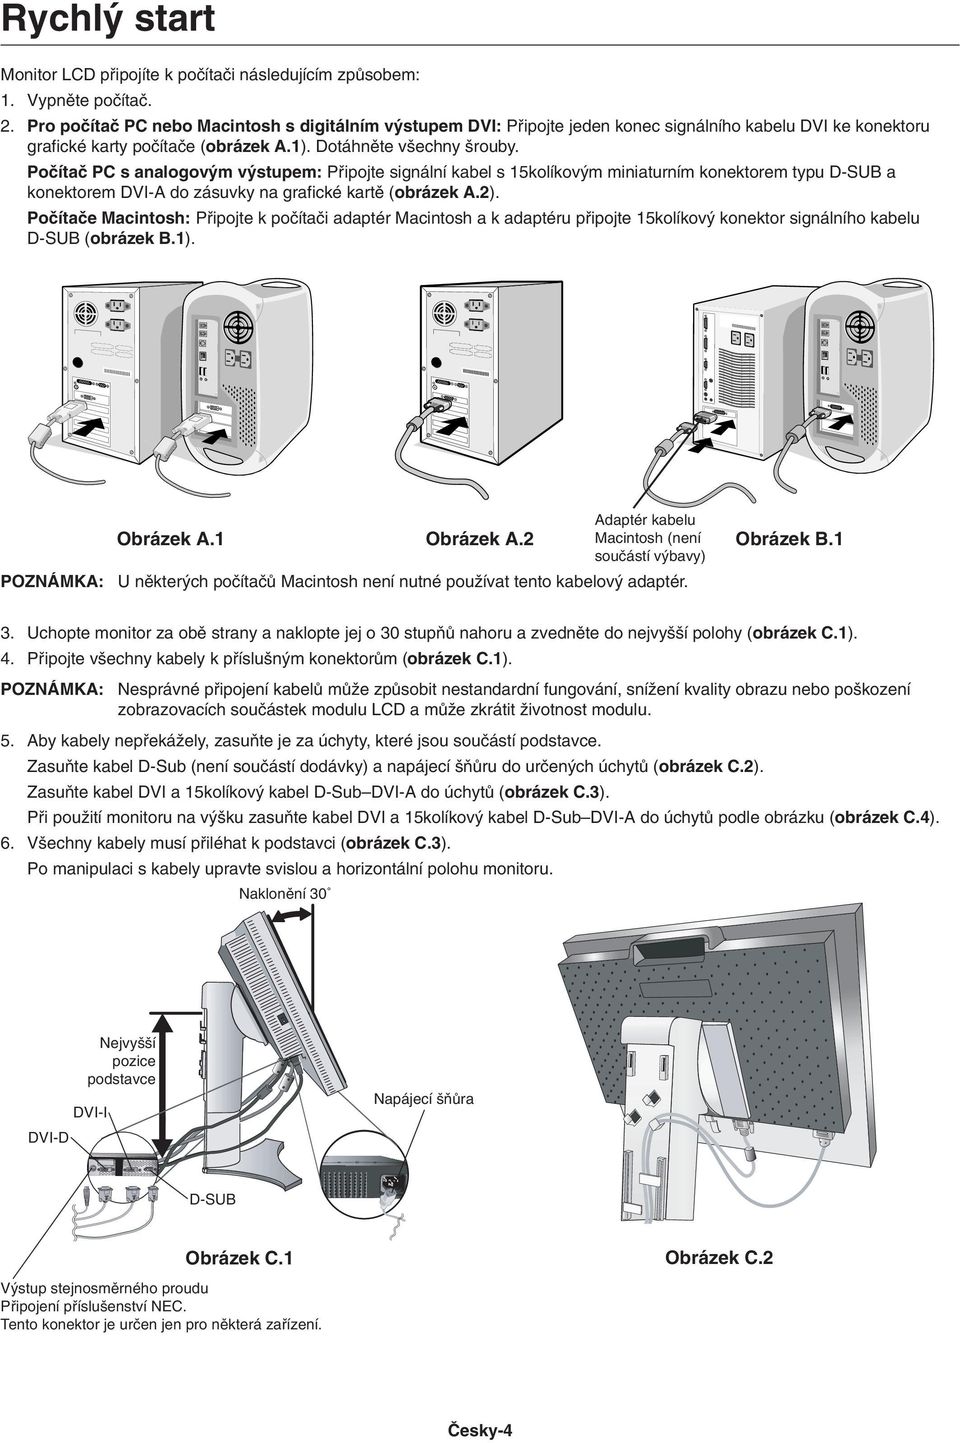 Poãítaã PC s analogov m v stupem: Pfiipojte signální kabel s 15kolíkov m miniaturním konektorem typu D-SUB a konektorem DVI-A do zásuvky na grafické kartû (obrázek A.2).